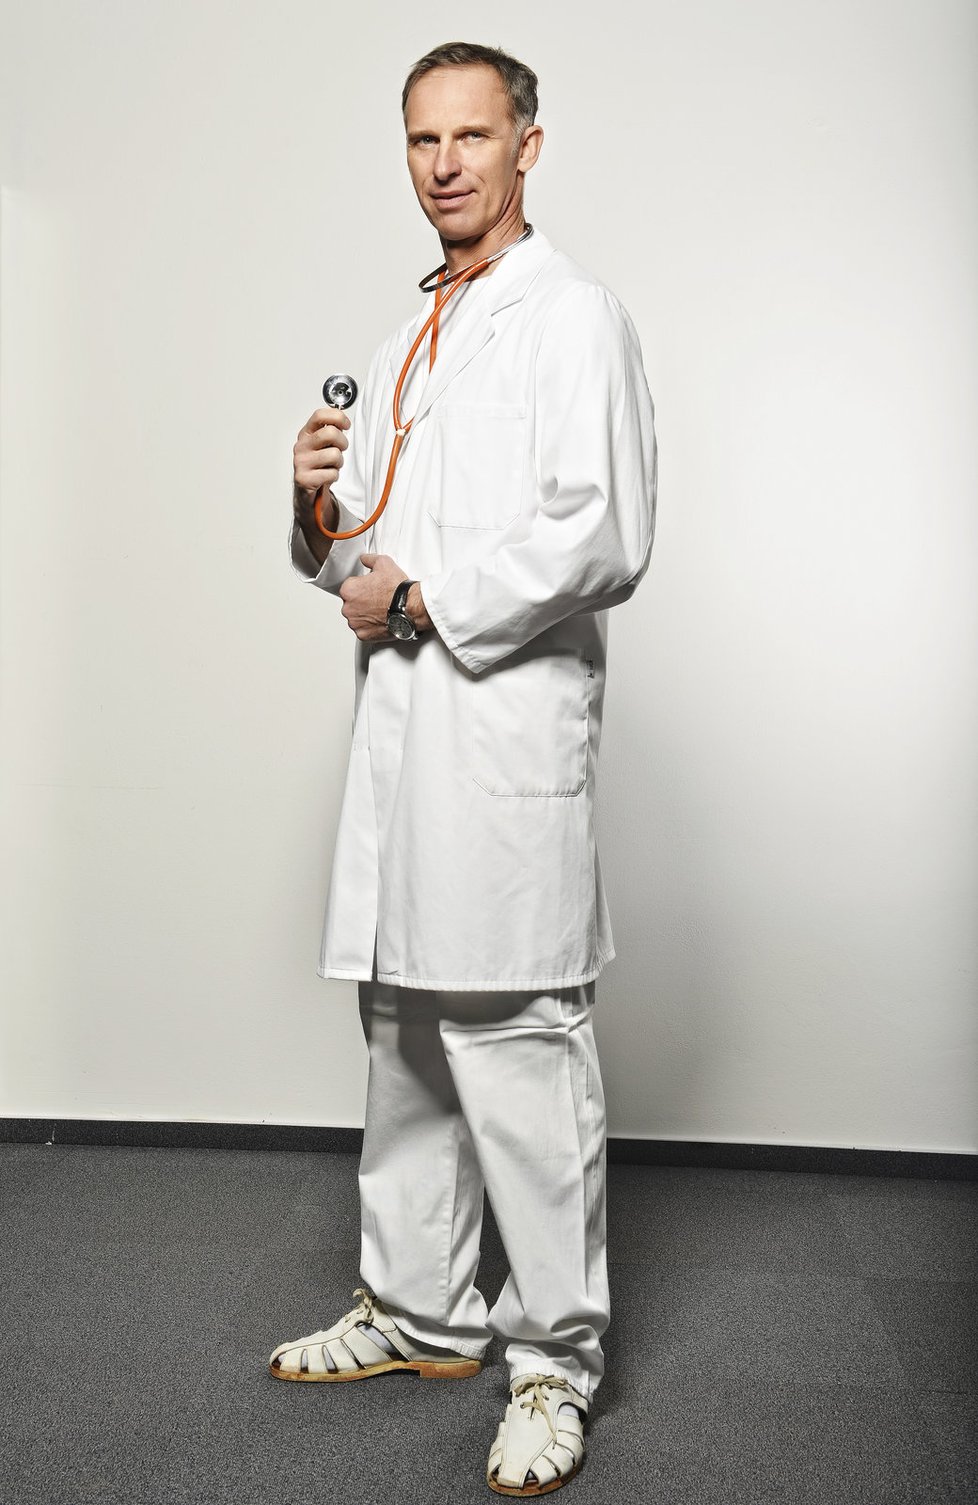 Dominik Hašek si zase vyzkoušel lékařský bílý úbor.